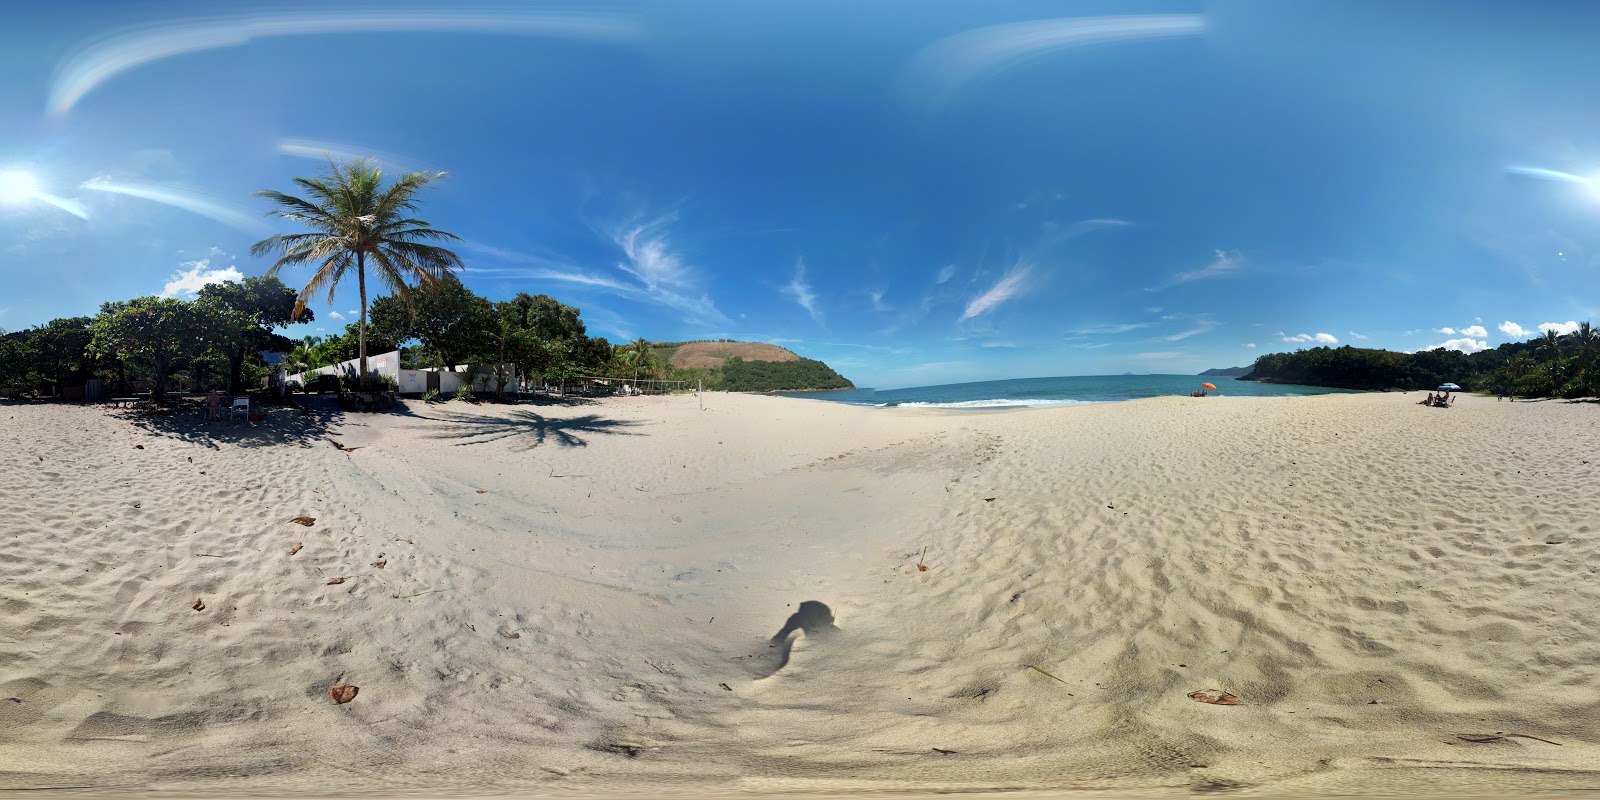 Pauba海滩的照片 - 受到放松专家欢迎的热门地点